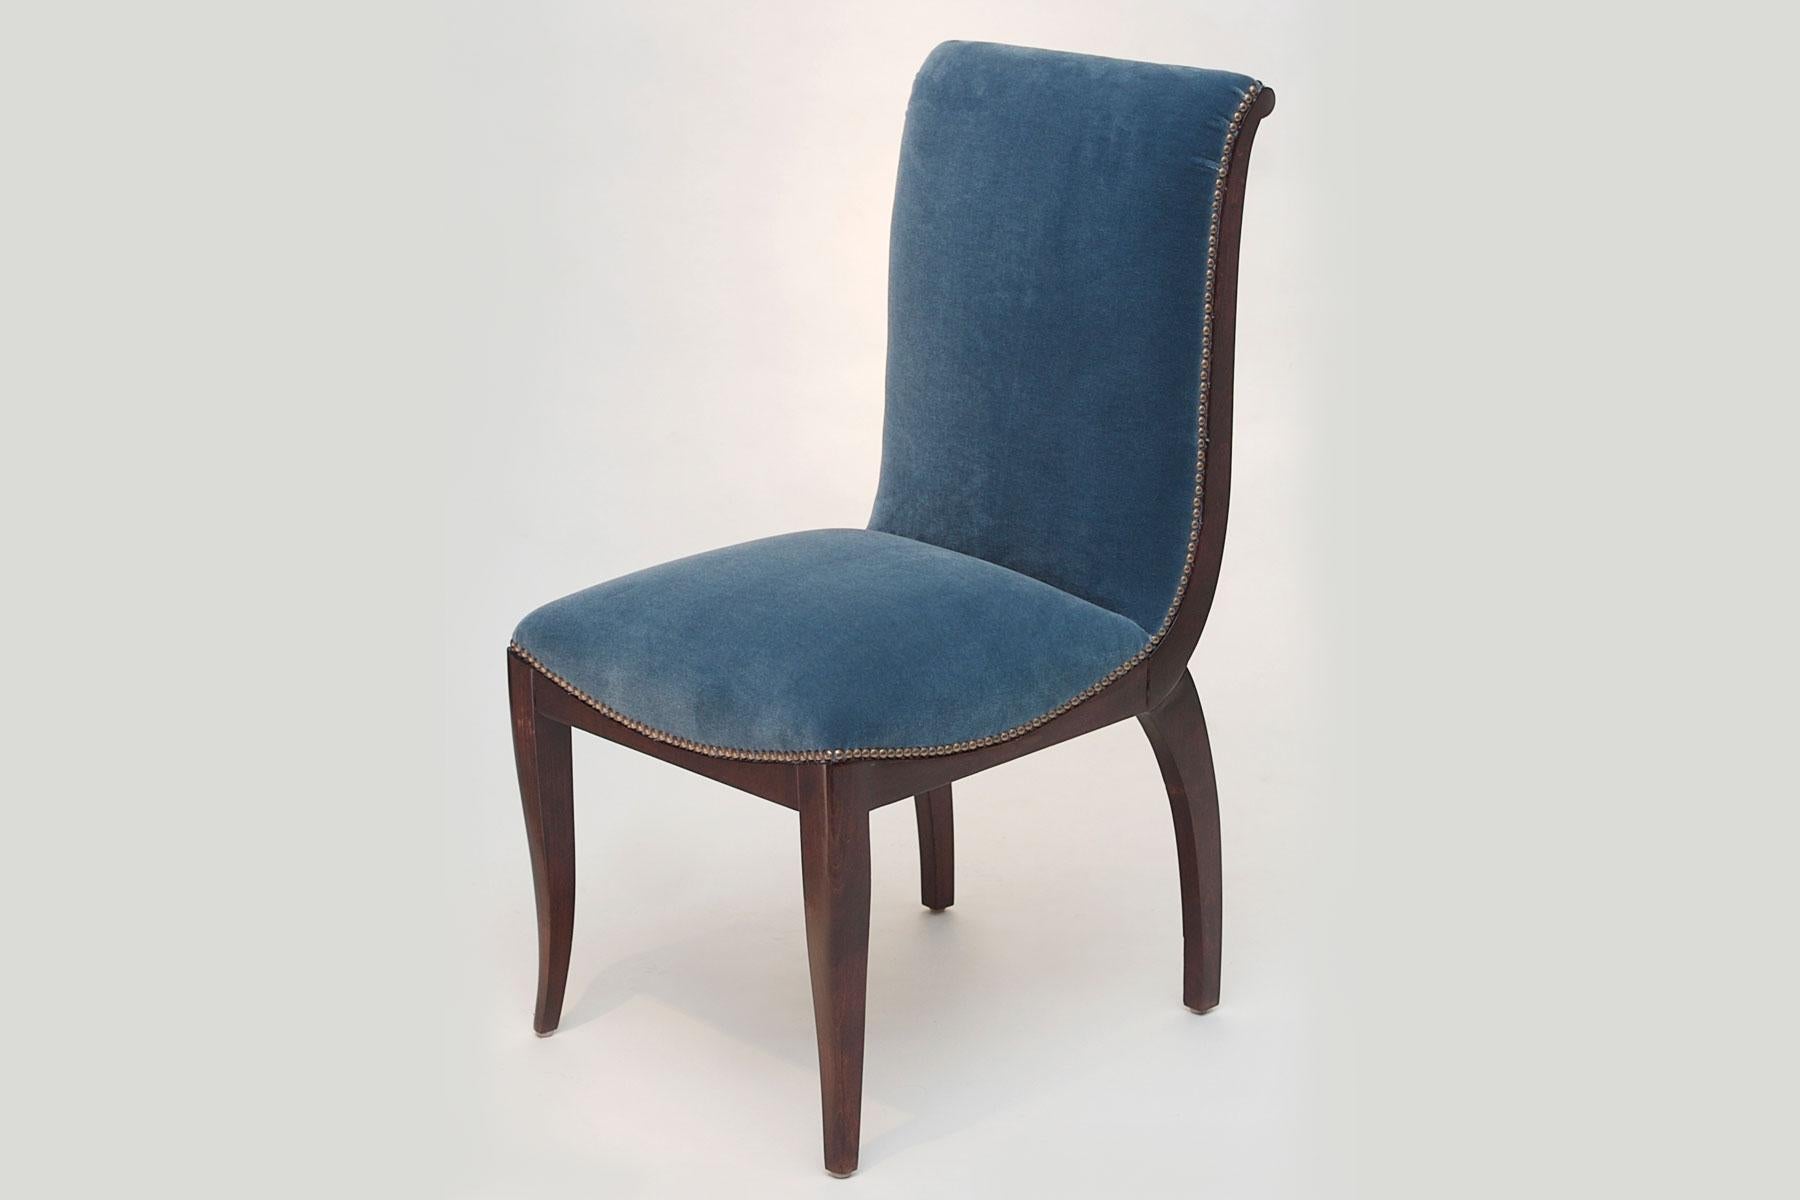 Maßgeschneiderter Stuhl von BoBo Atelier.
Maßgefertigte Holz- und Polsterarbeiten sind im Preis jedes Stuhls enthalten.
Kunde liefert Stoff (COM)